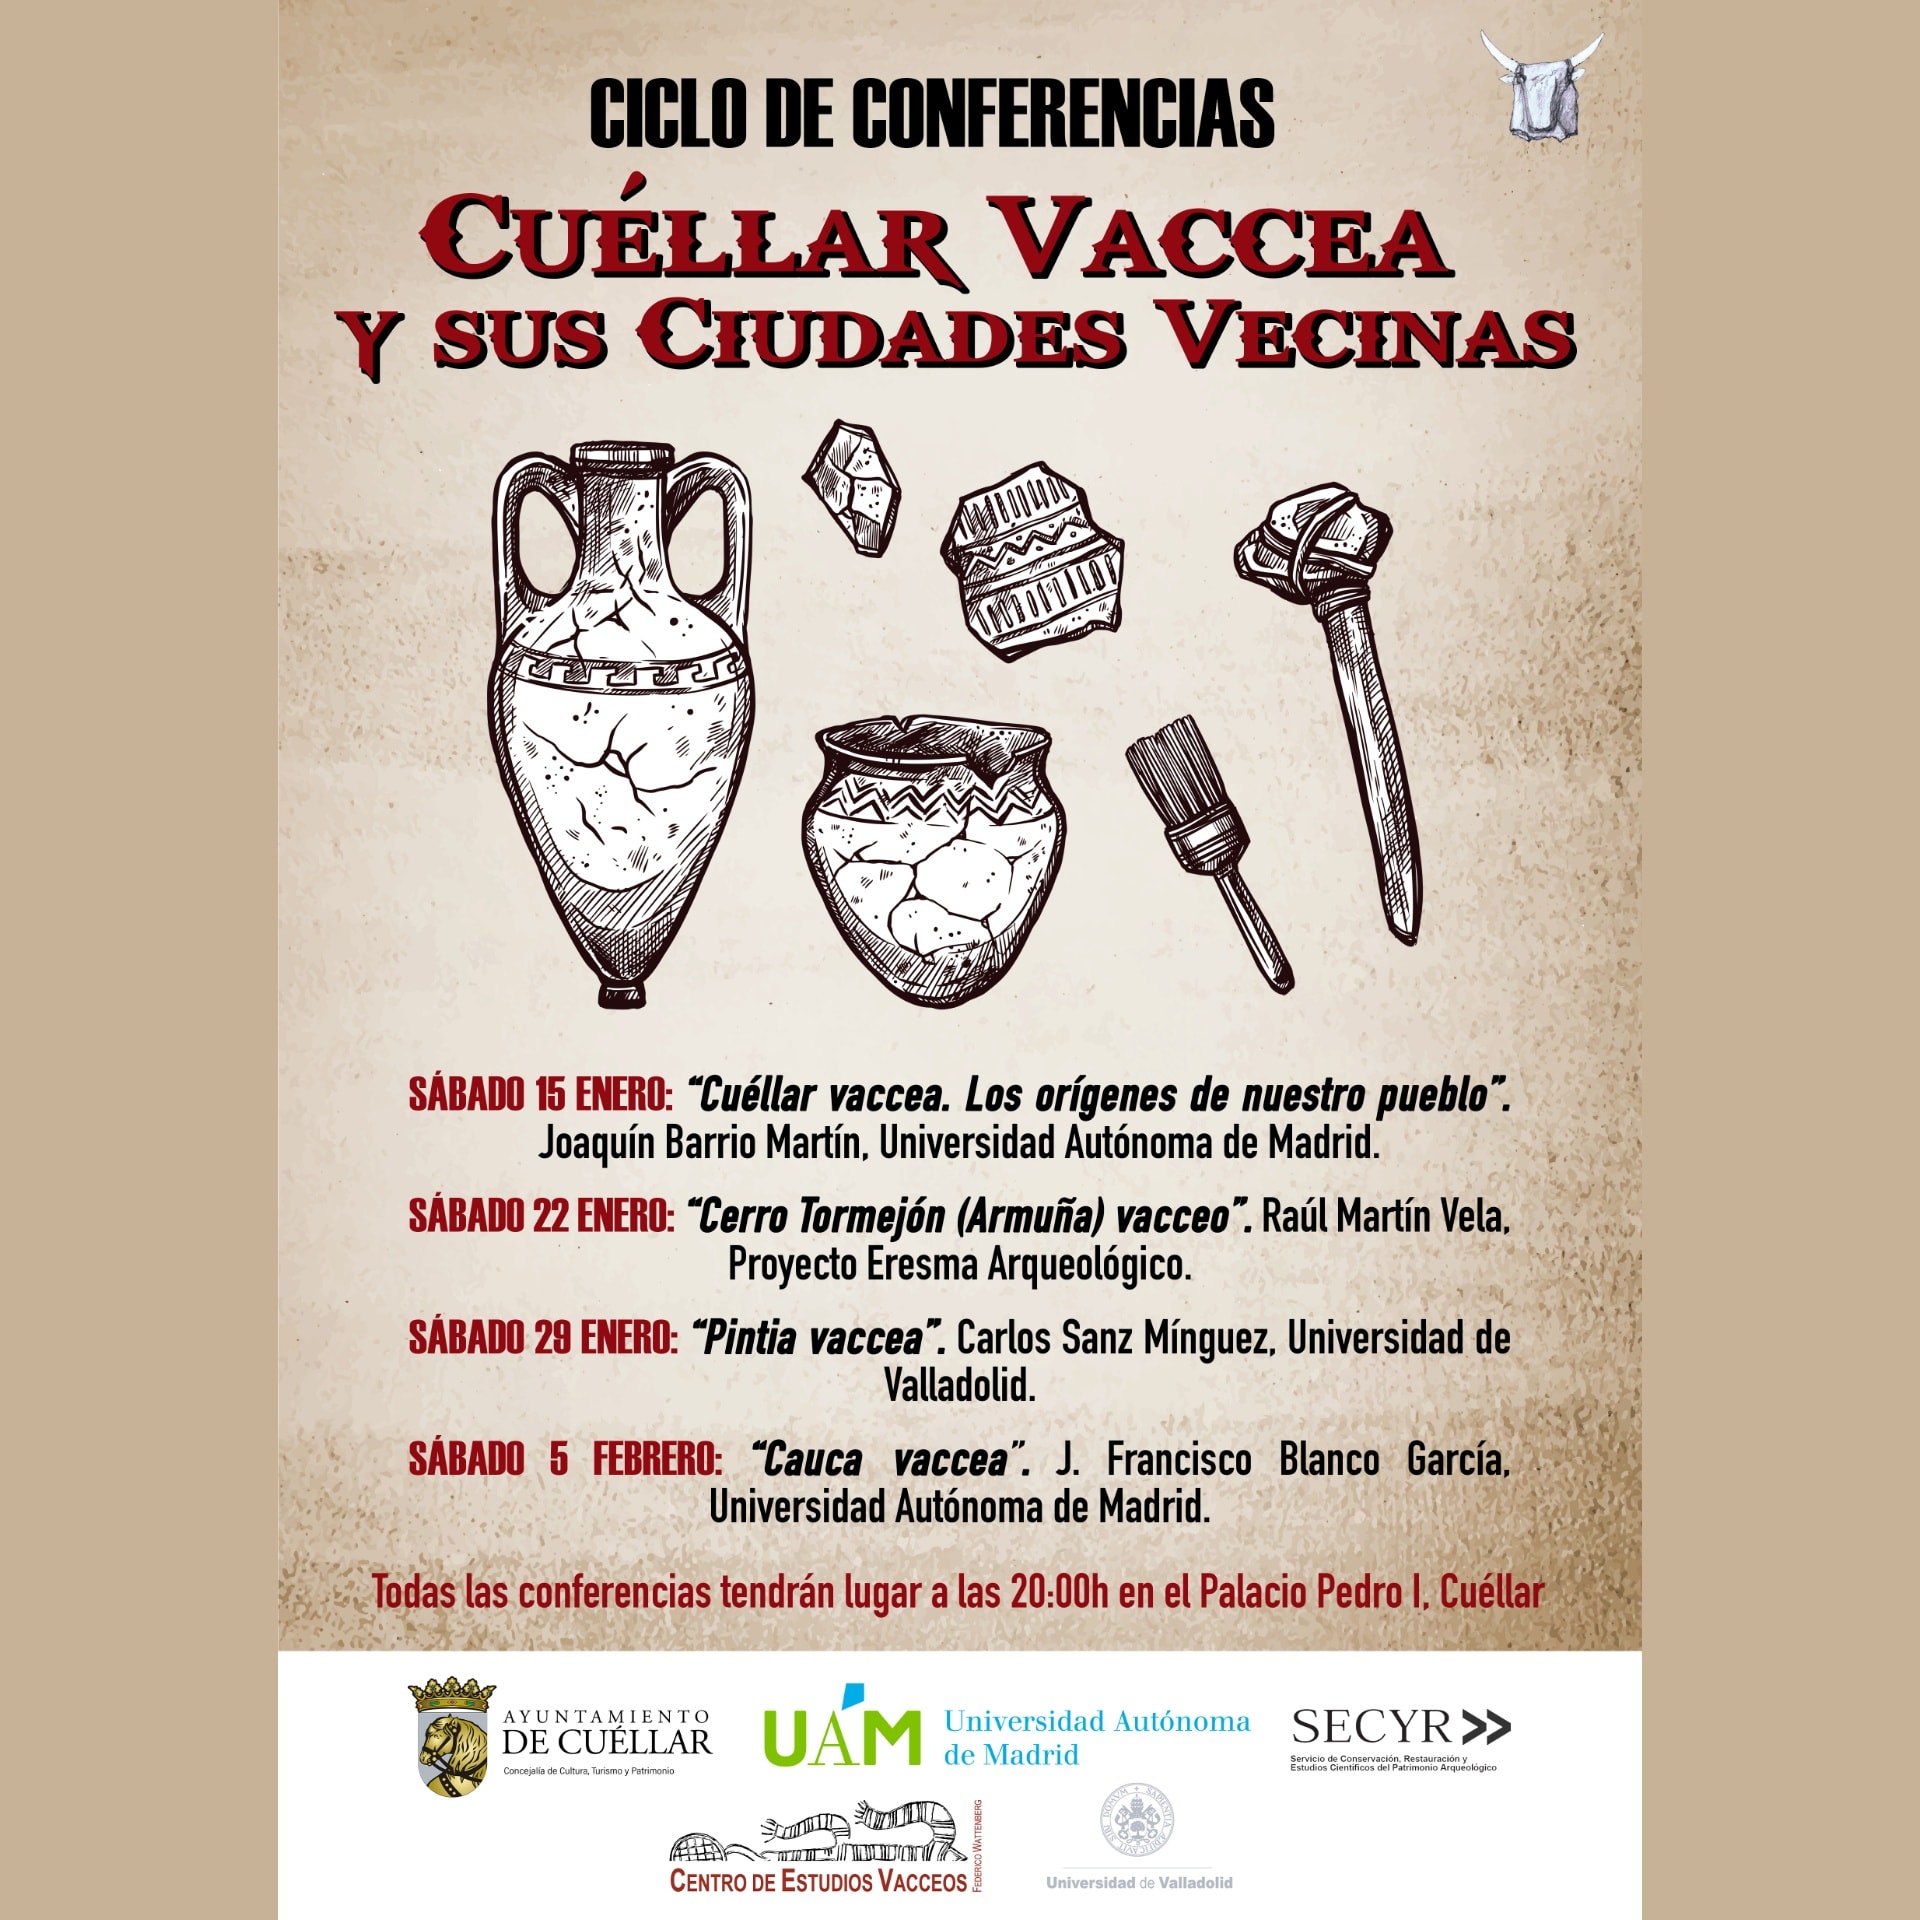 Ciclo_de_conferencias_cuellar_vaccea.jpg